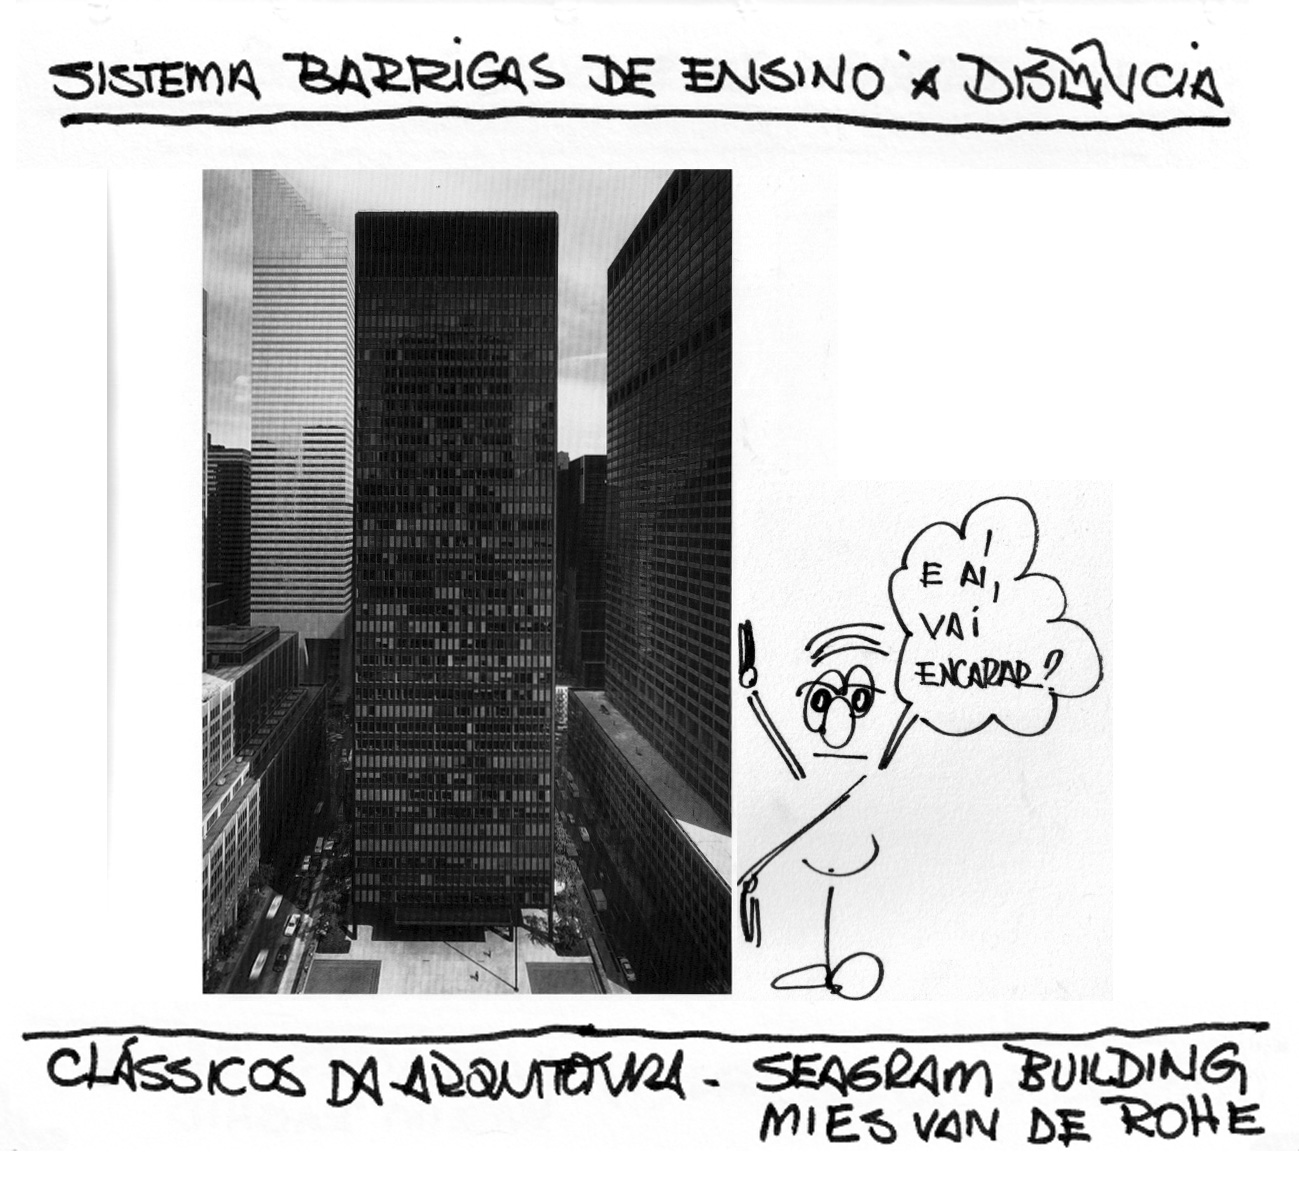 [clássicos+da+arquitetura+02+-+seagram+building+10072008.jpg]